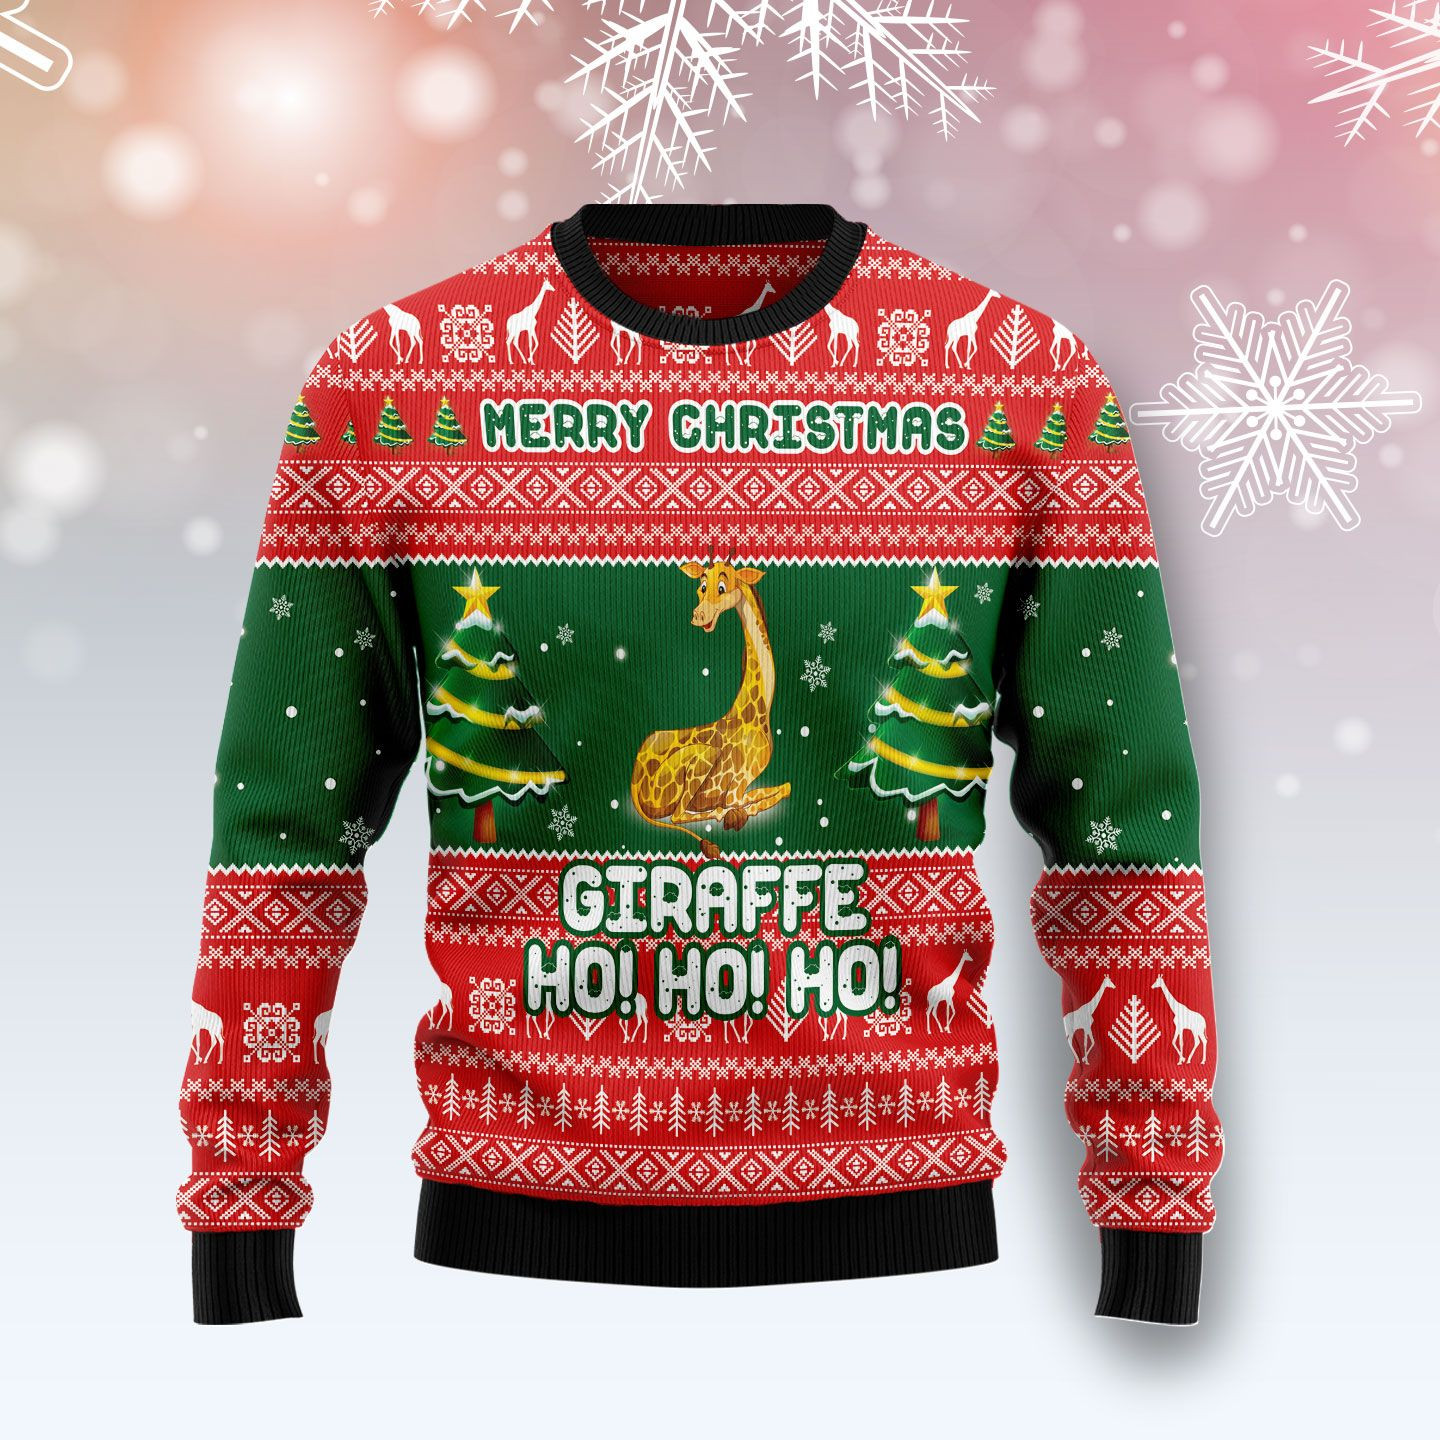 Giraffe Ho Ho Ho Ugly Christmas Sweater